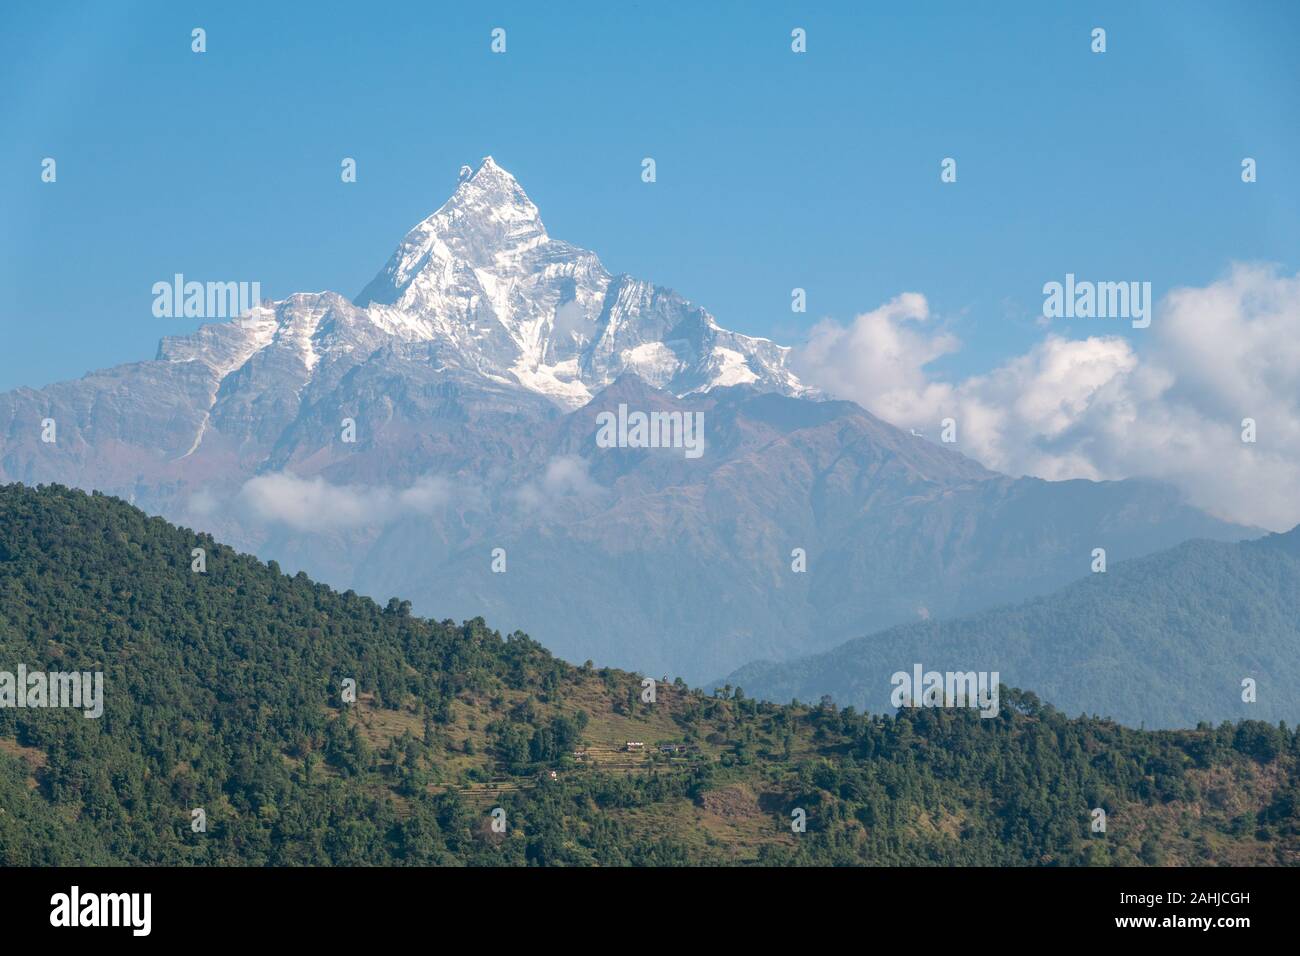 La bellissima montagna Machhapuchhre che è parte dell'Himalaya Mountain Range in Nepal. Foto Stock